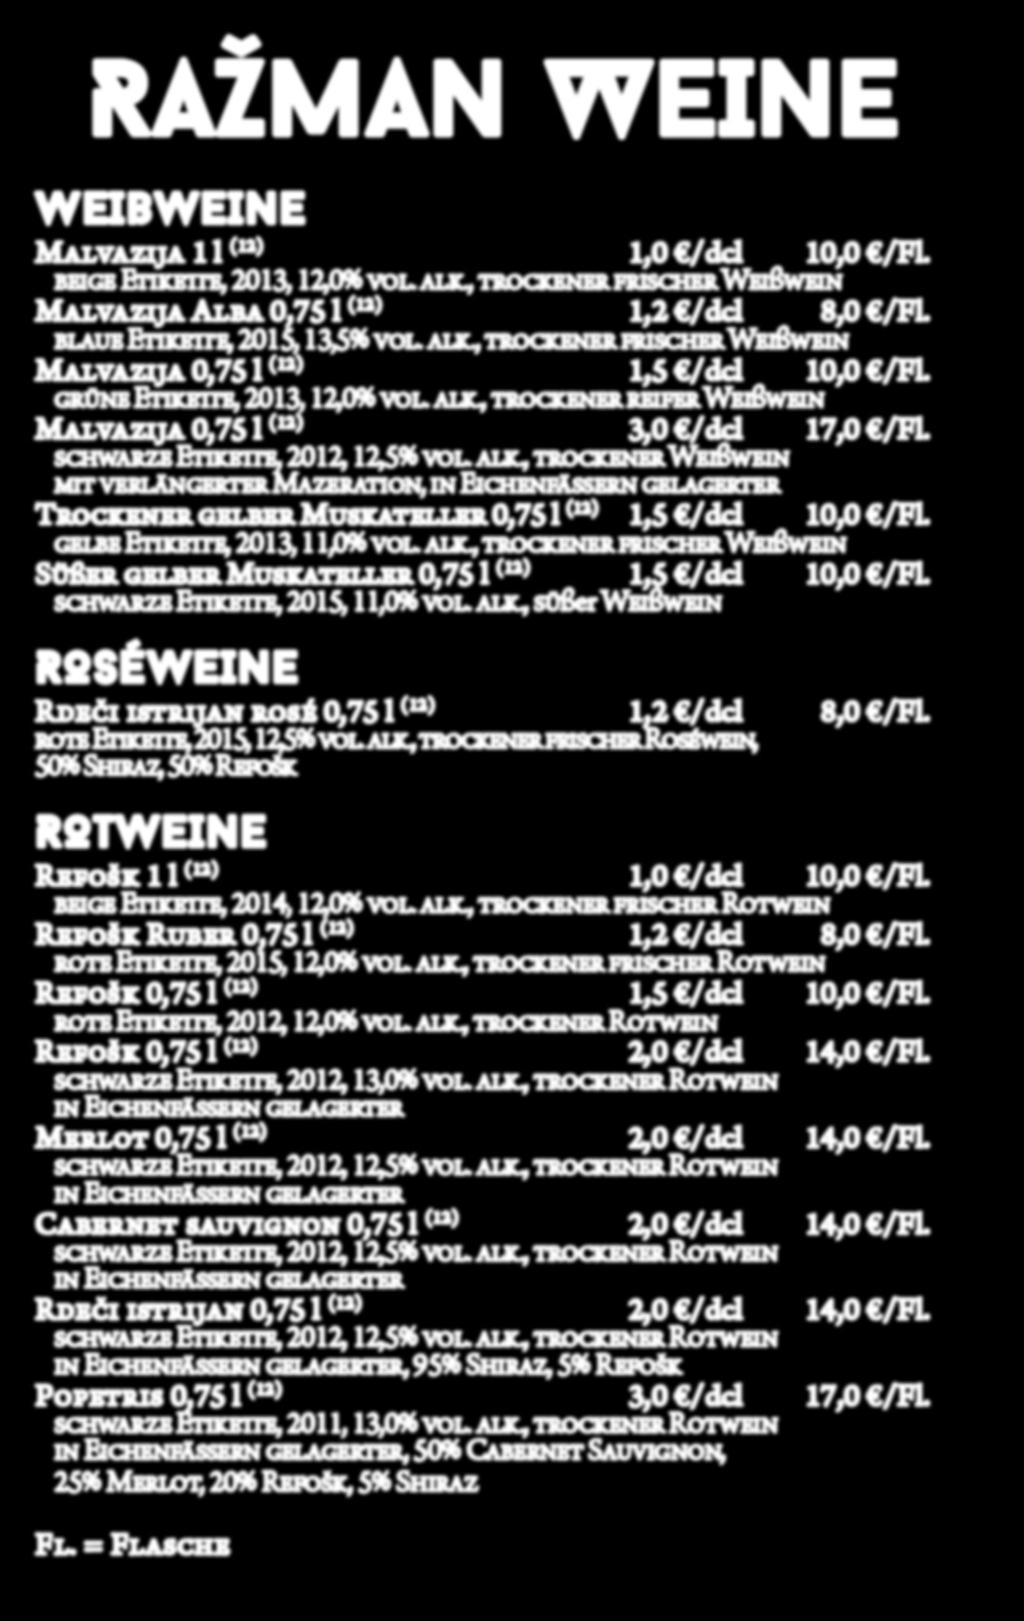 RAŽMAN WEINE WEIßWEINE Malvazija 1 l (12) 1,0 /dcl 10,0 /Fl. beige Etikette, 2013, 12,0% vol. alk., trockener frischer Weißwein Malvazija Alba 0,75 l (12) 1,2 /dcl 8,0 /Fl.